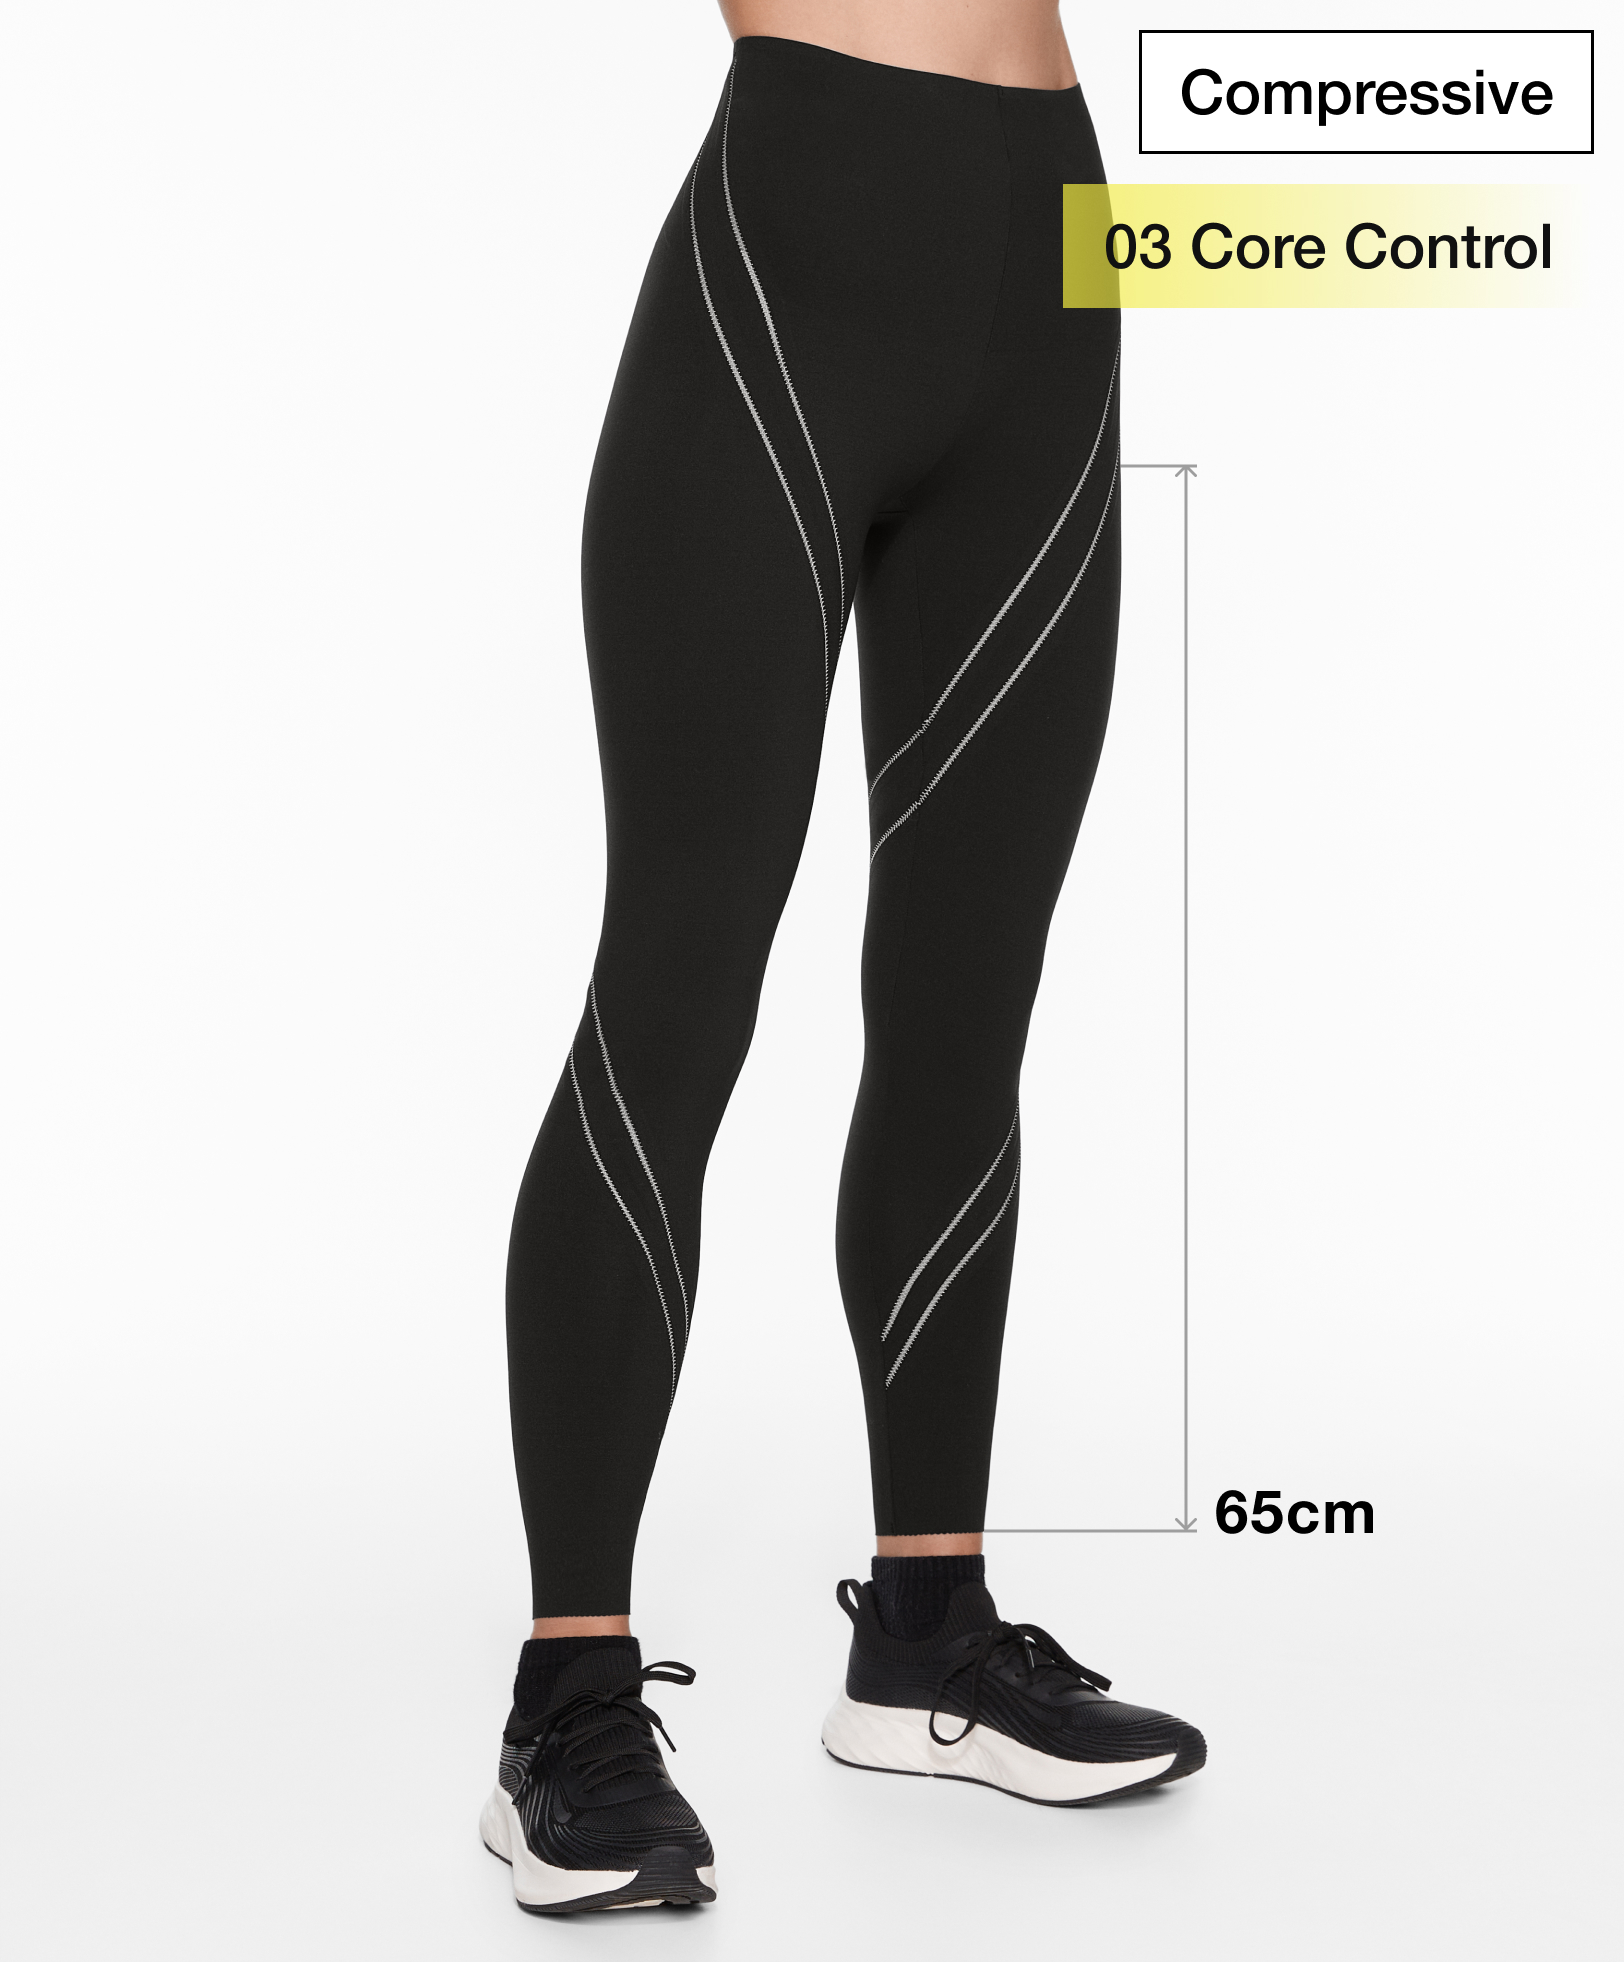 Ankellange leggings, compressive, core control, piping, 65 cm